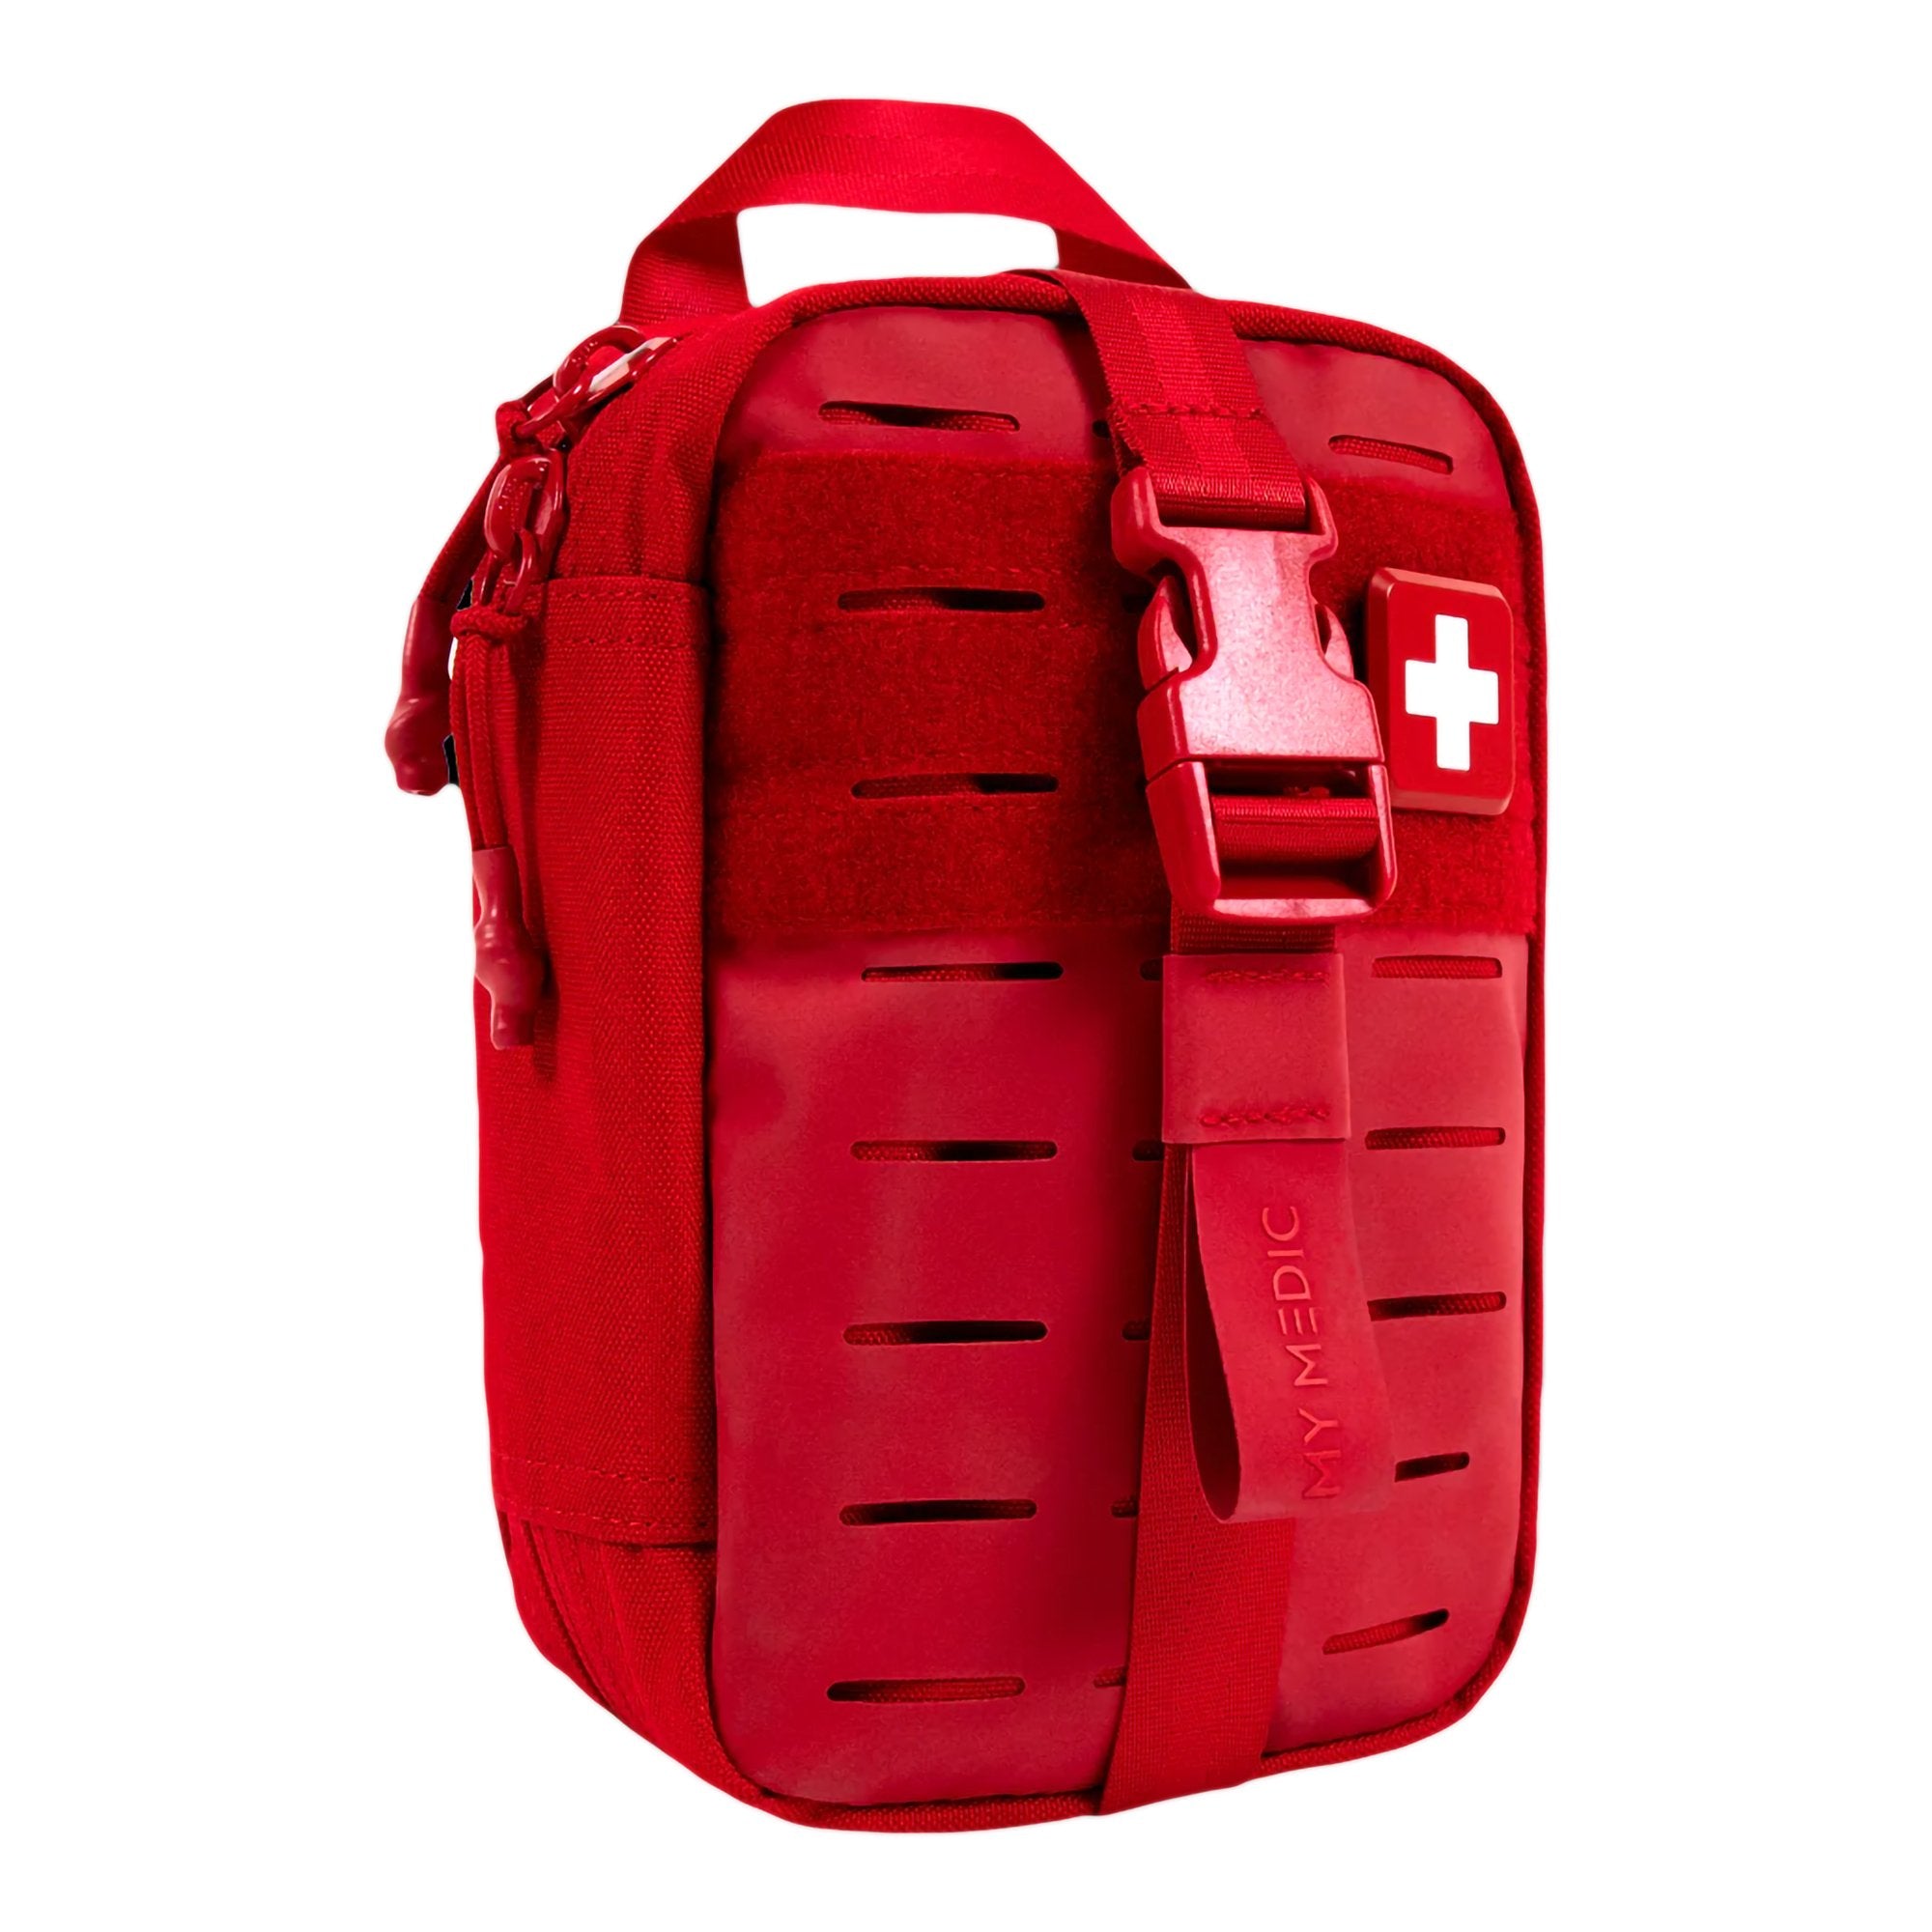 My Medic? MyFak Mini Standard First Aid Kit, Red